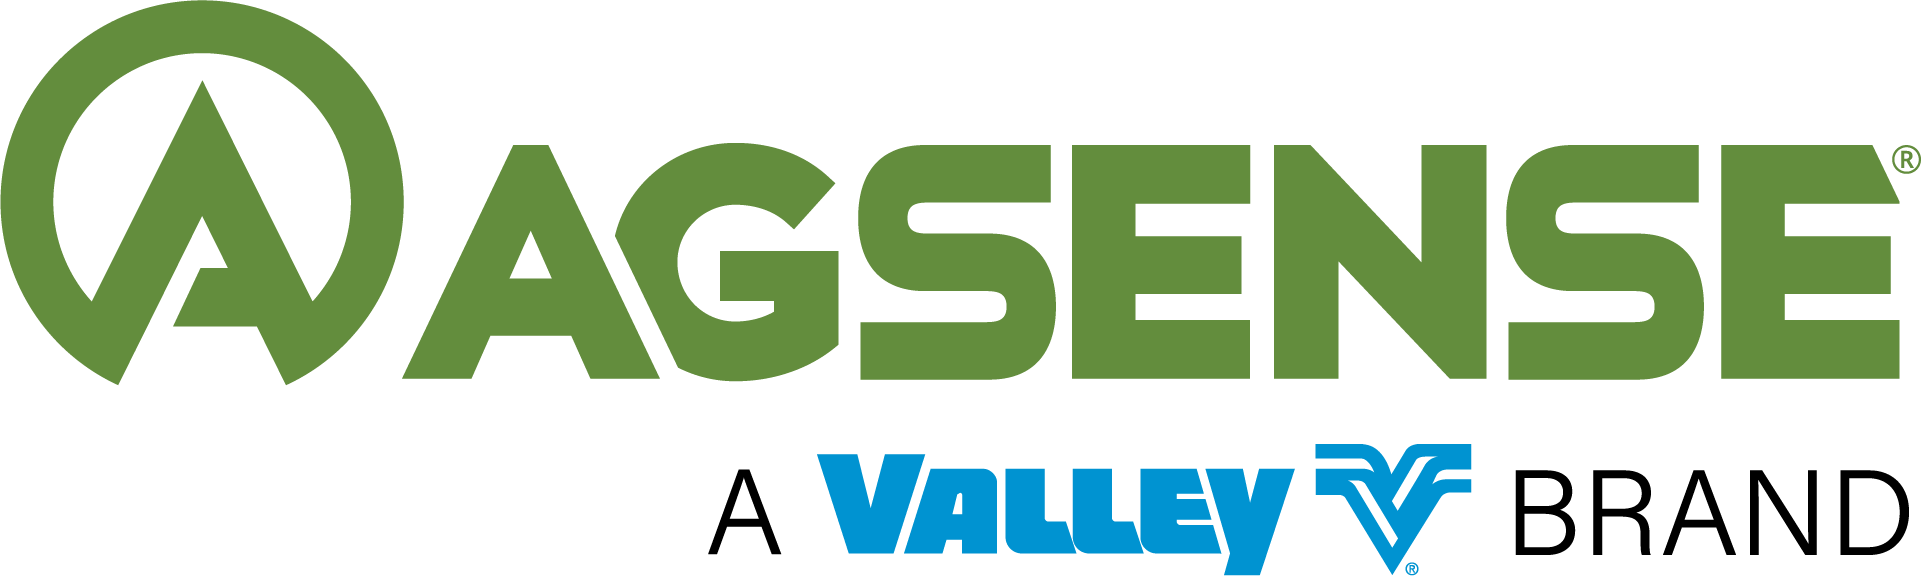 VAgSense - A Valley Brand_Logos